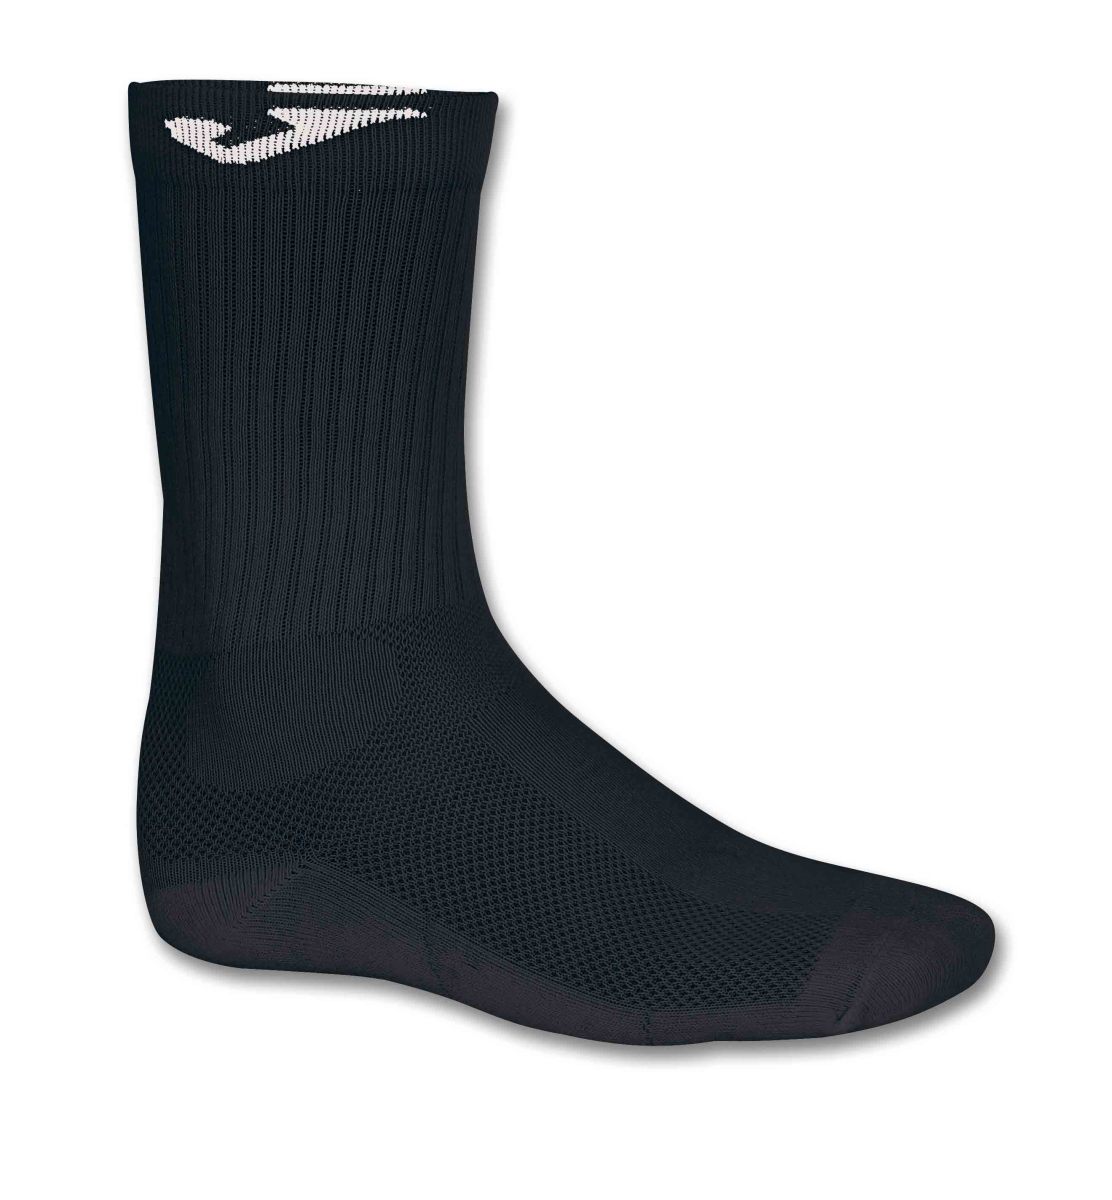 Joma Long Socks 12 Pack